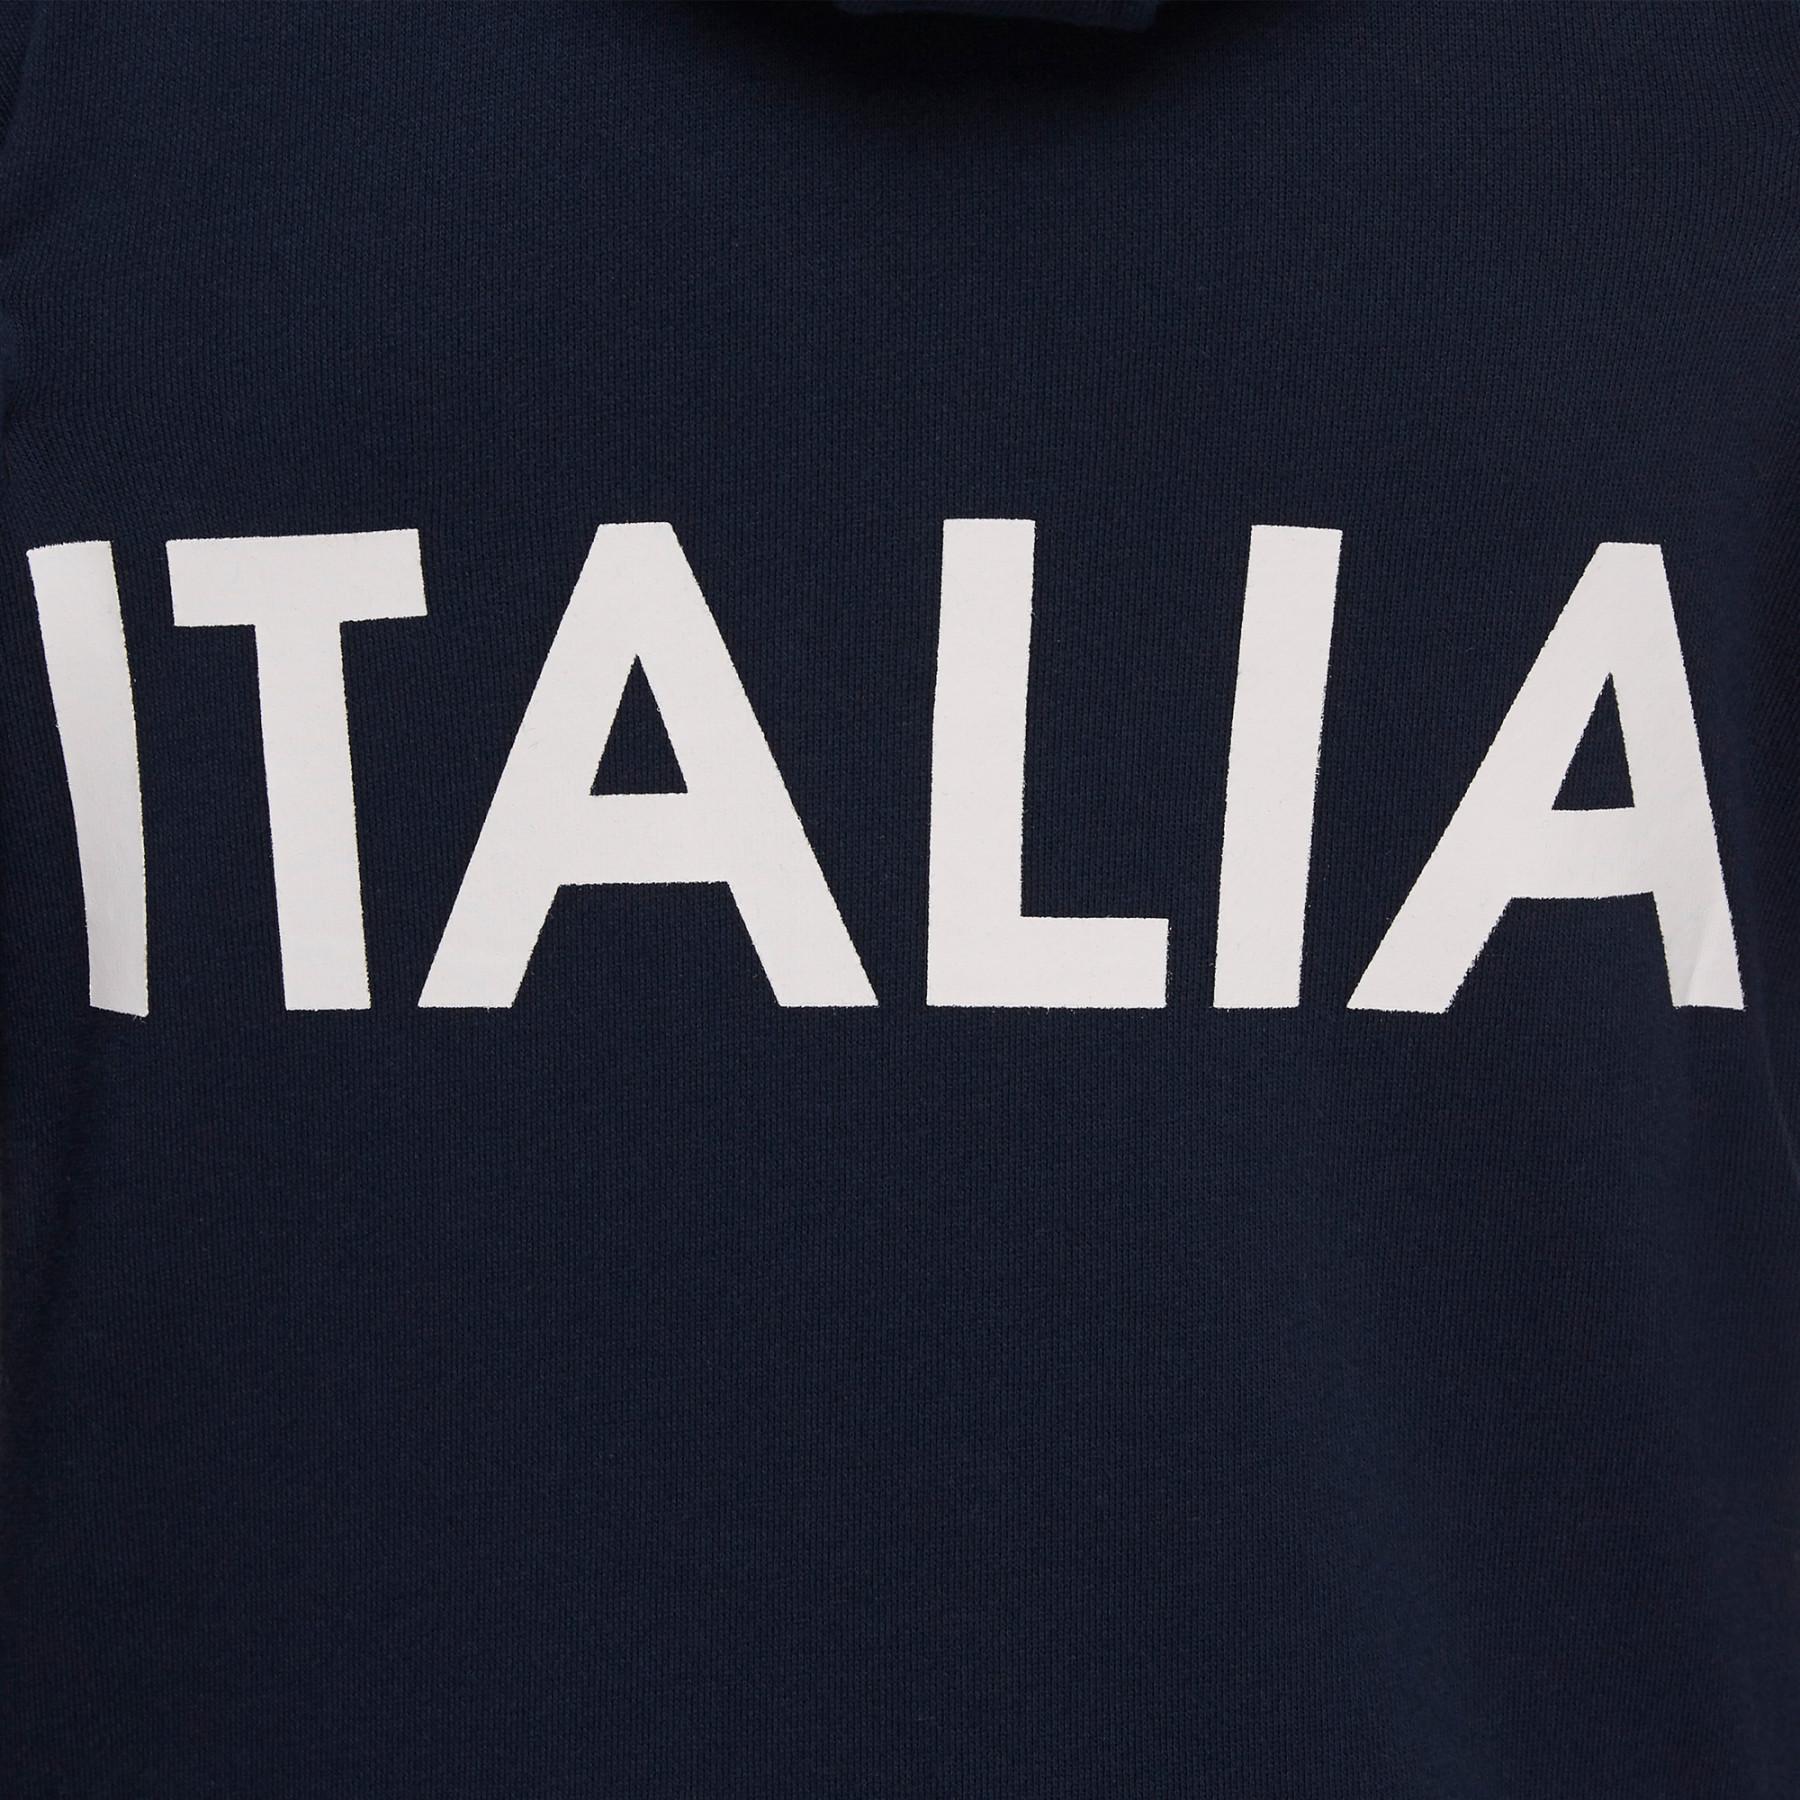 Women's hooded sweatshirt Italie Rugby 2018